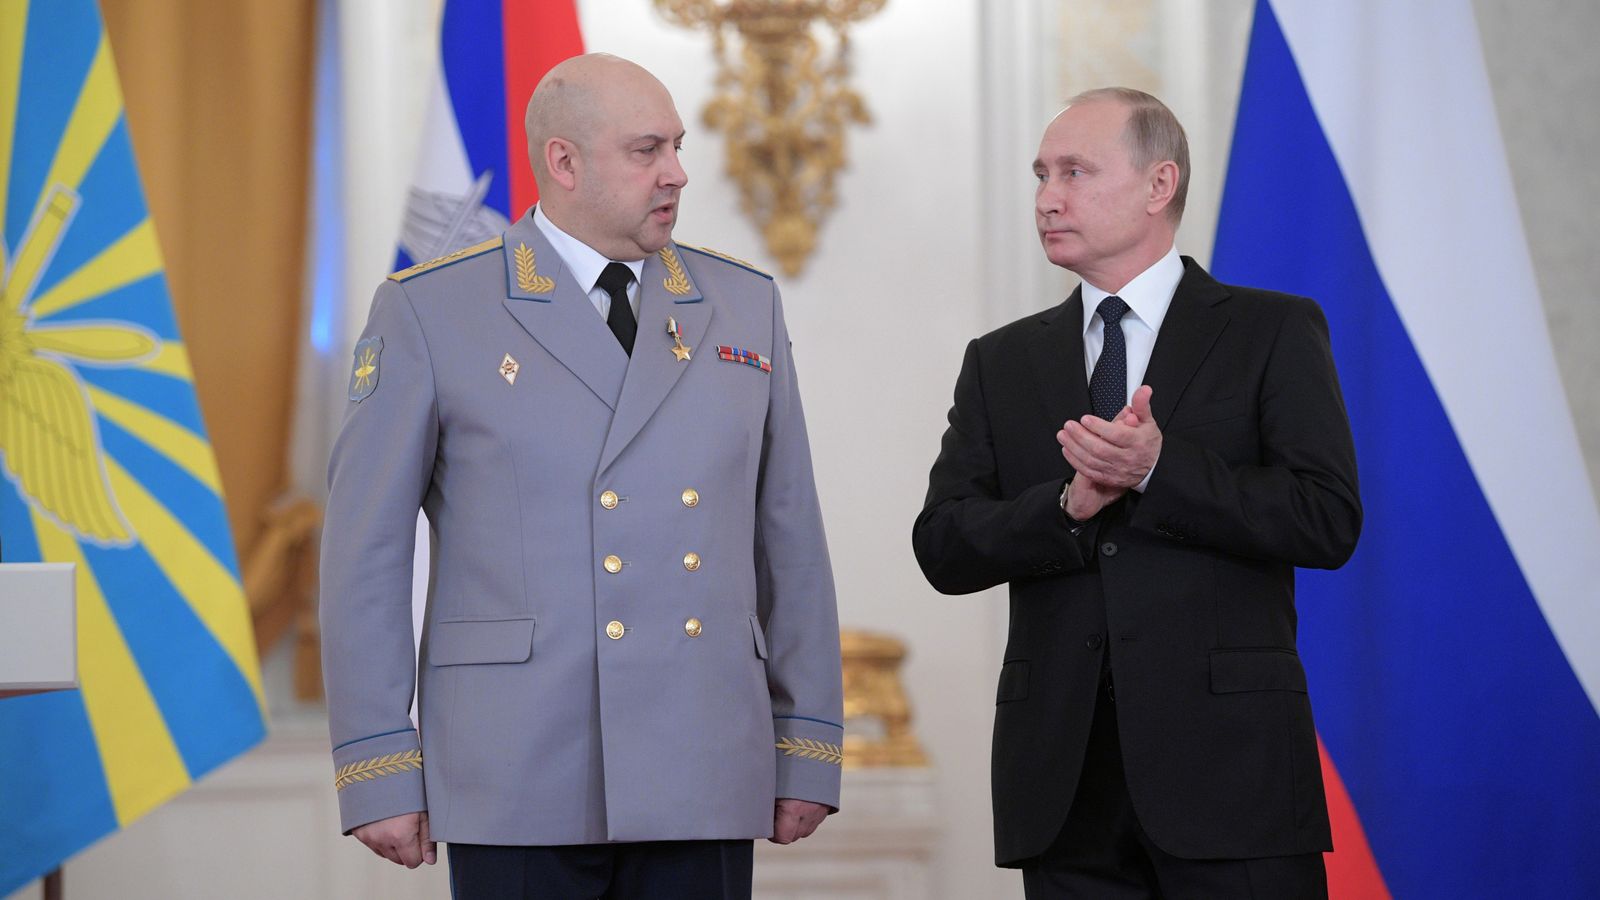 Ο νέος “άγριος” διοικητής του στρατού της Ρωσίας στην Ουκρανία είναι Σεργκέι Σουροβίκιν